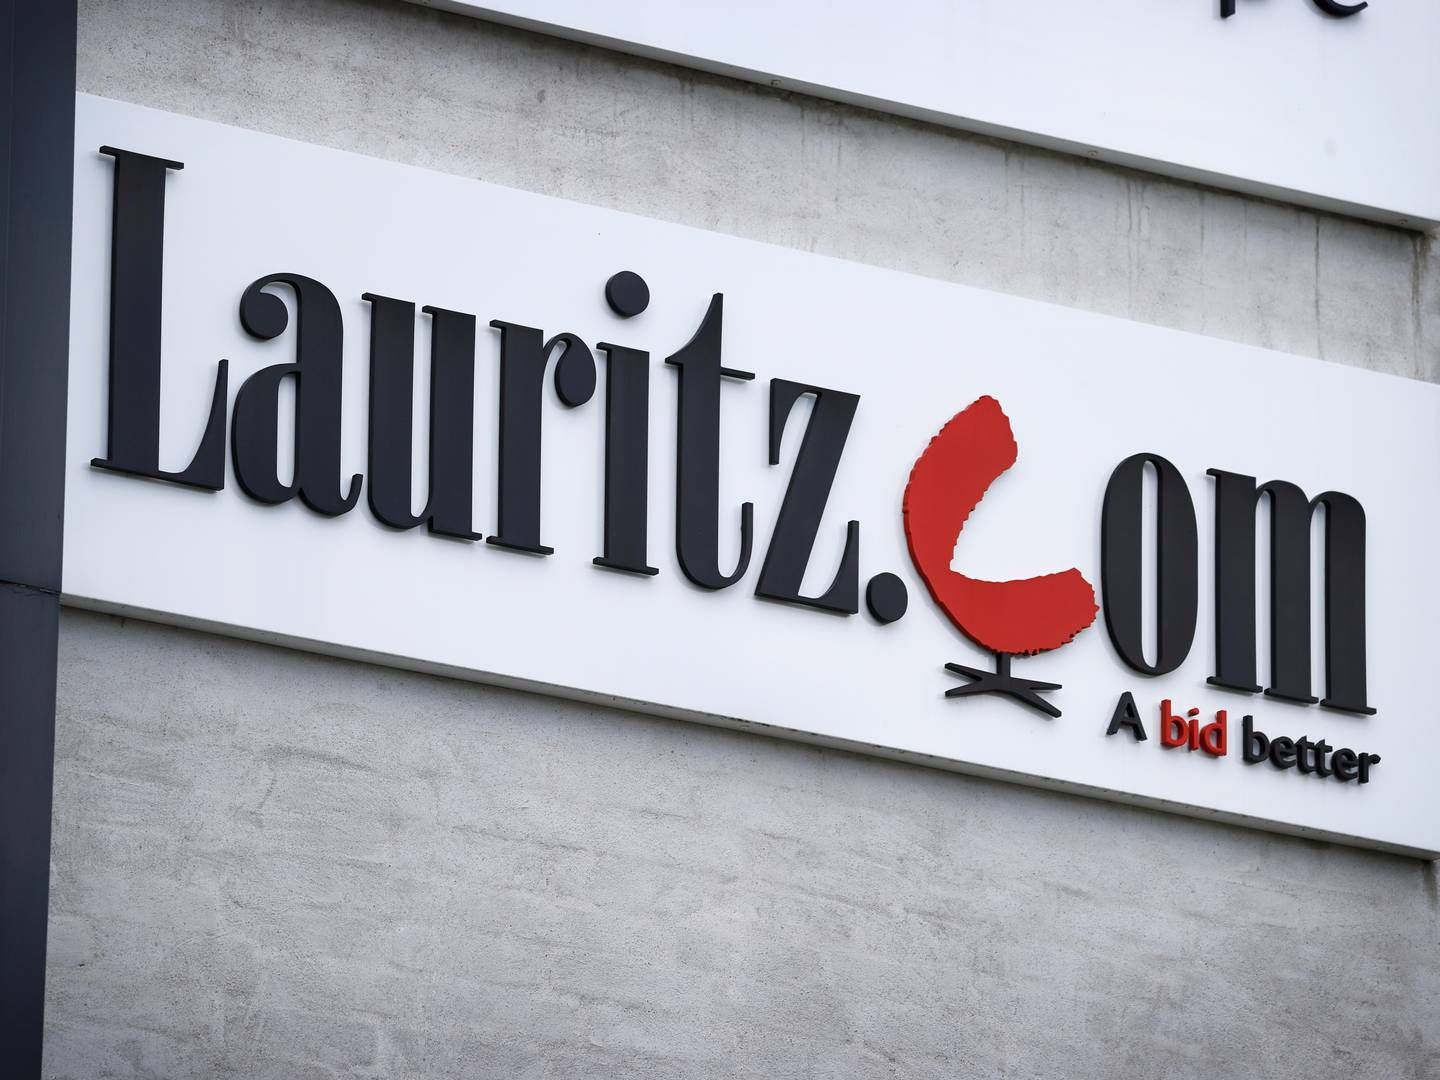 Auktionshuset Lauritz.com blev erklæret konkurs 11. juli. Nu er oprydningen i fuld gang. | Foto: Jens Dresling/Ritzau Scanpix